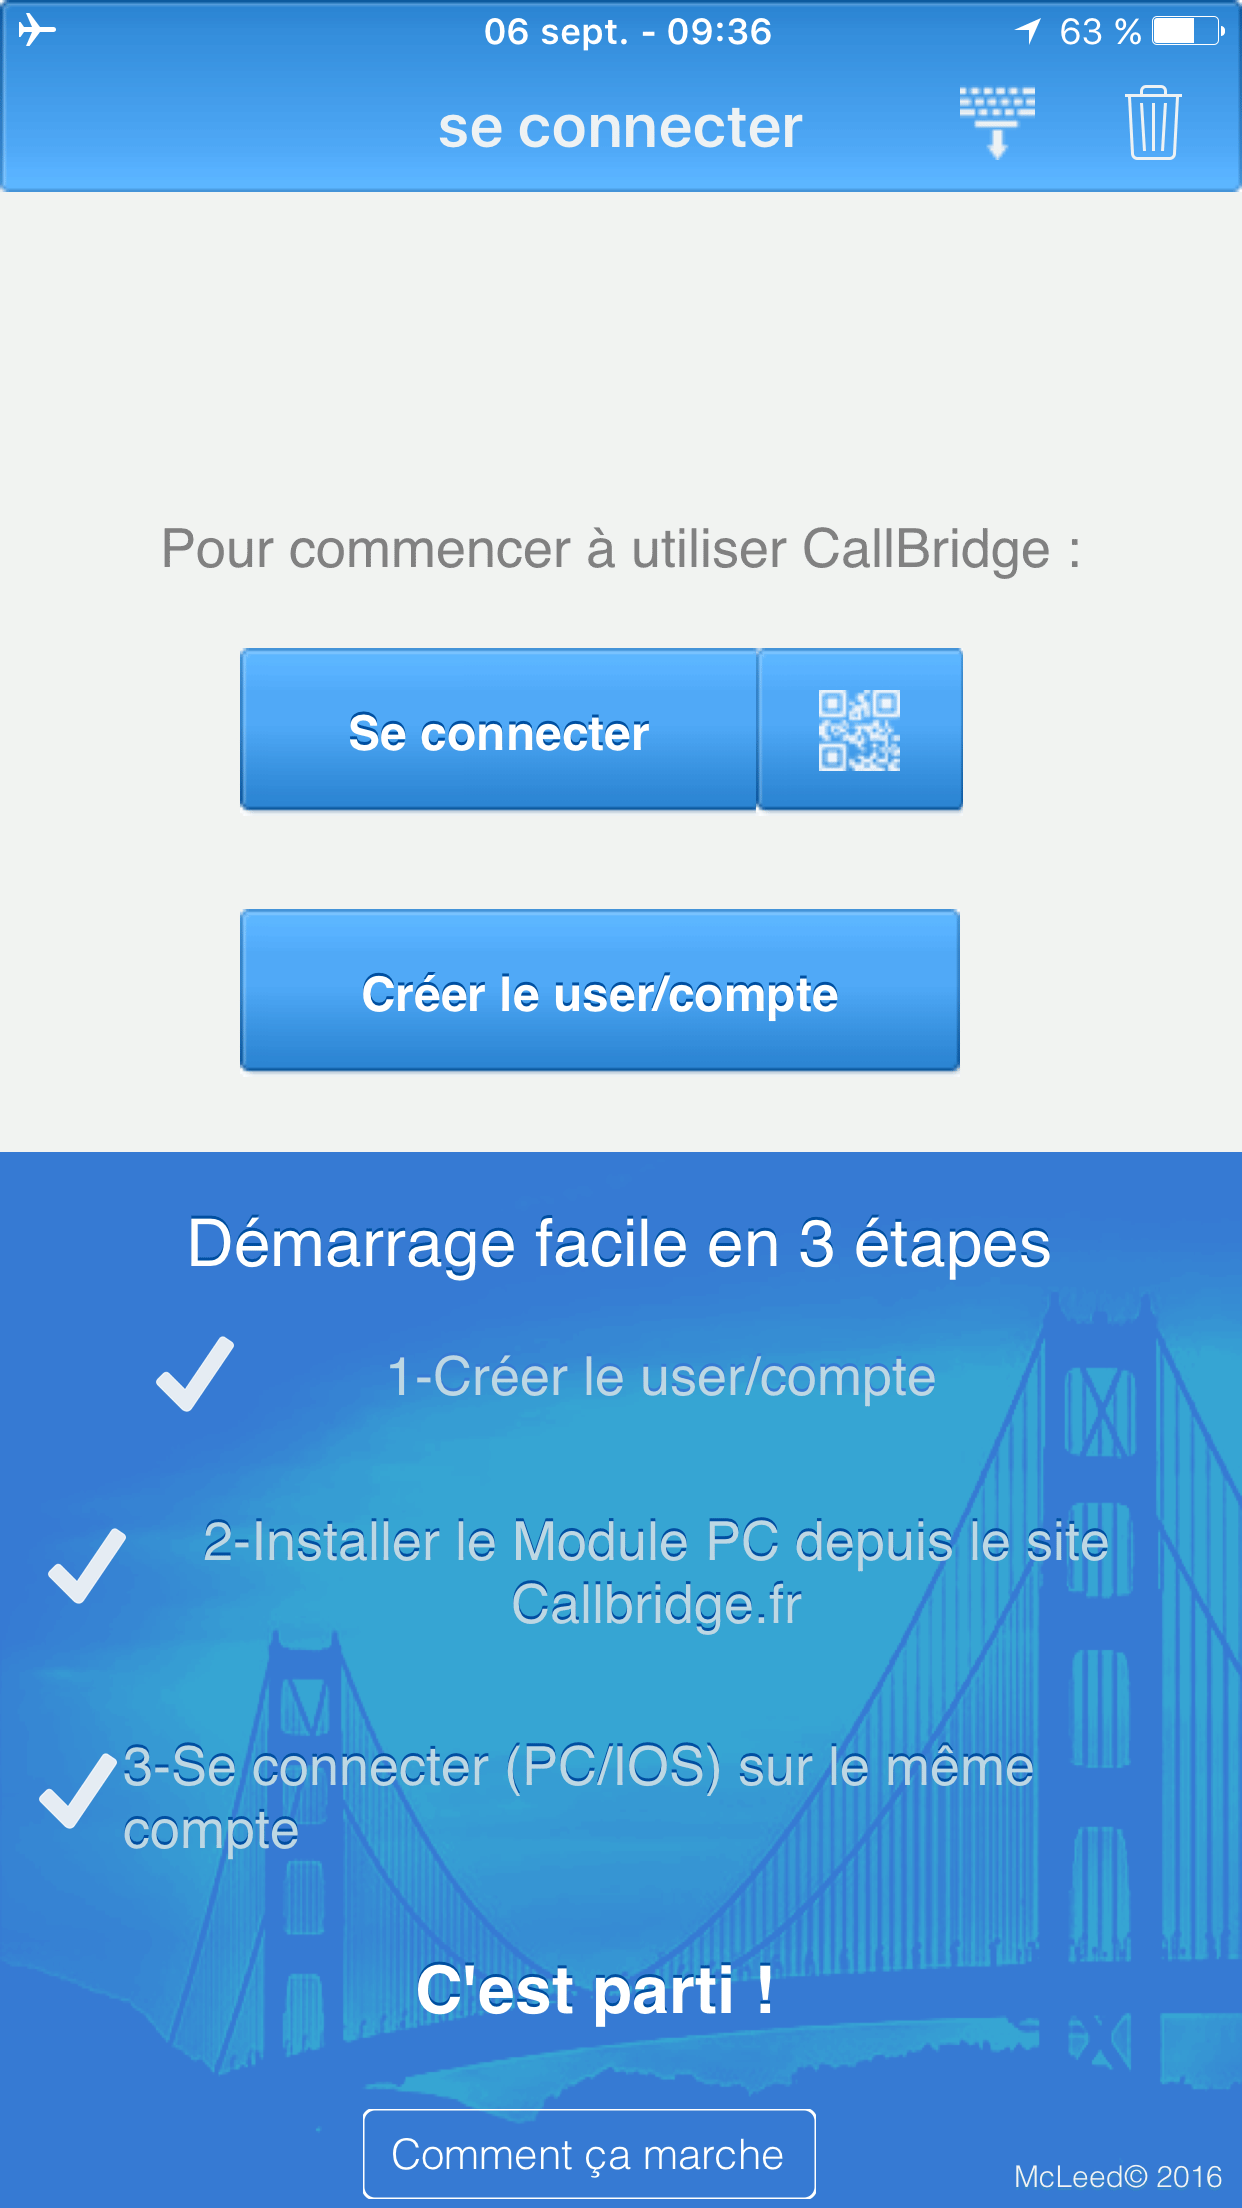 CallBridge Mobile - Connexion ultra rapide grâce au QR Code. Vous êtes fonctionnel en moins de 5 minutes.